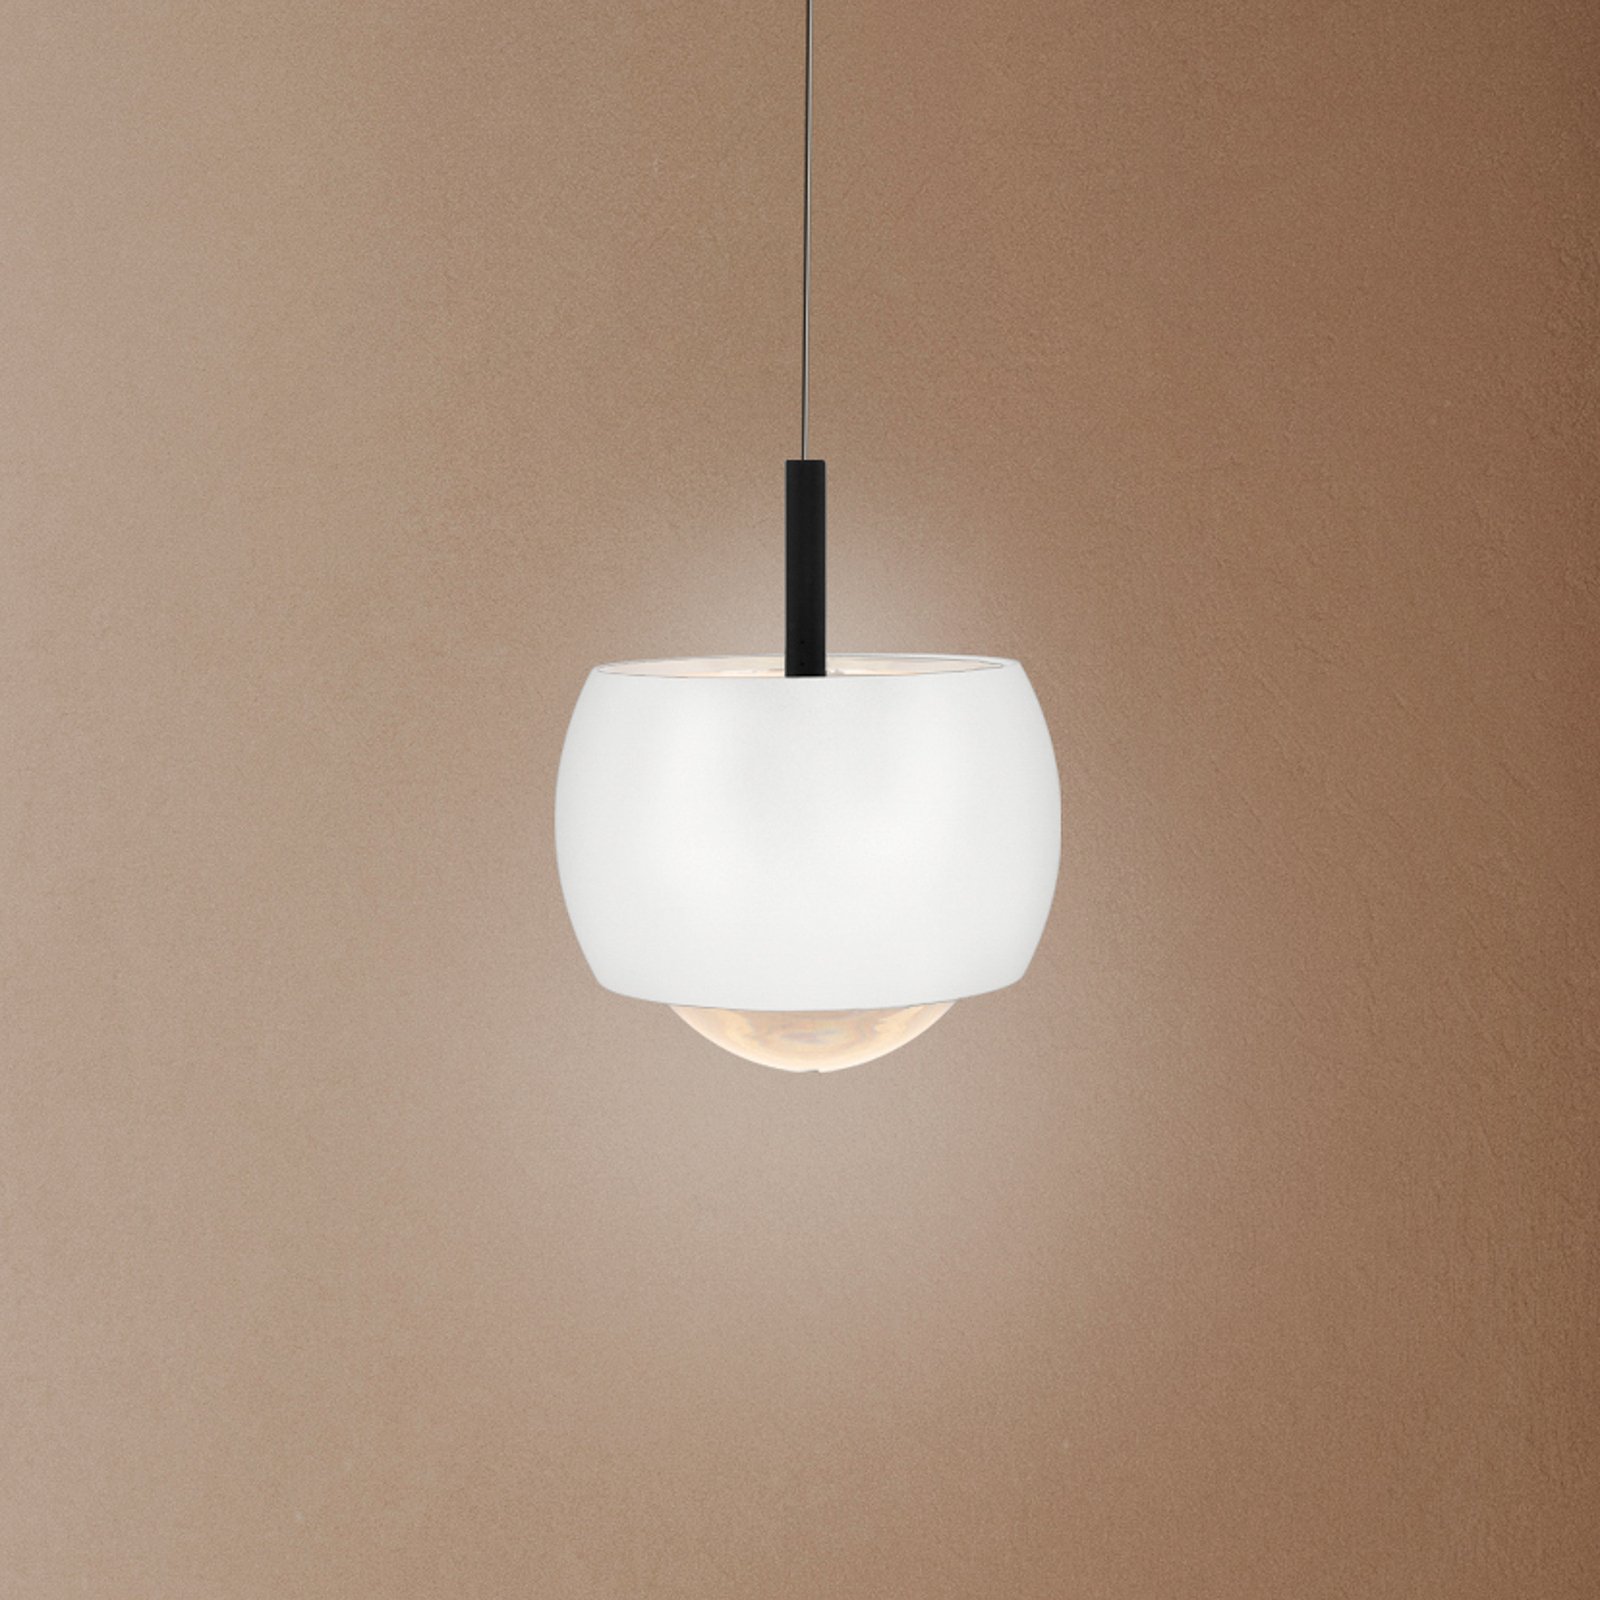 Lampa wisząca LED Roller, biała, z regulacją wysokości, szklany klosz